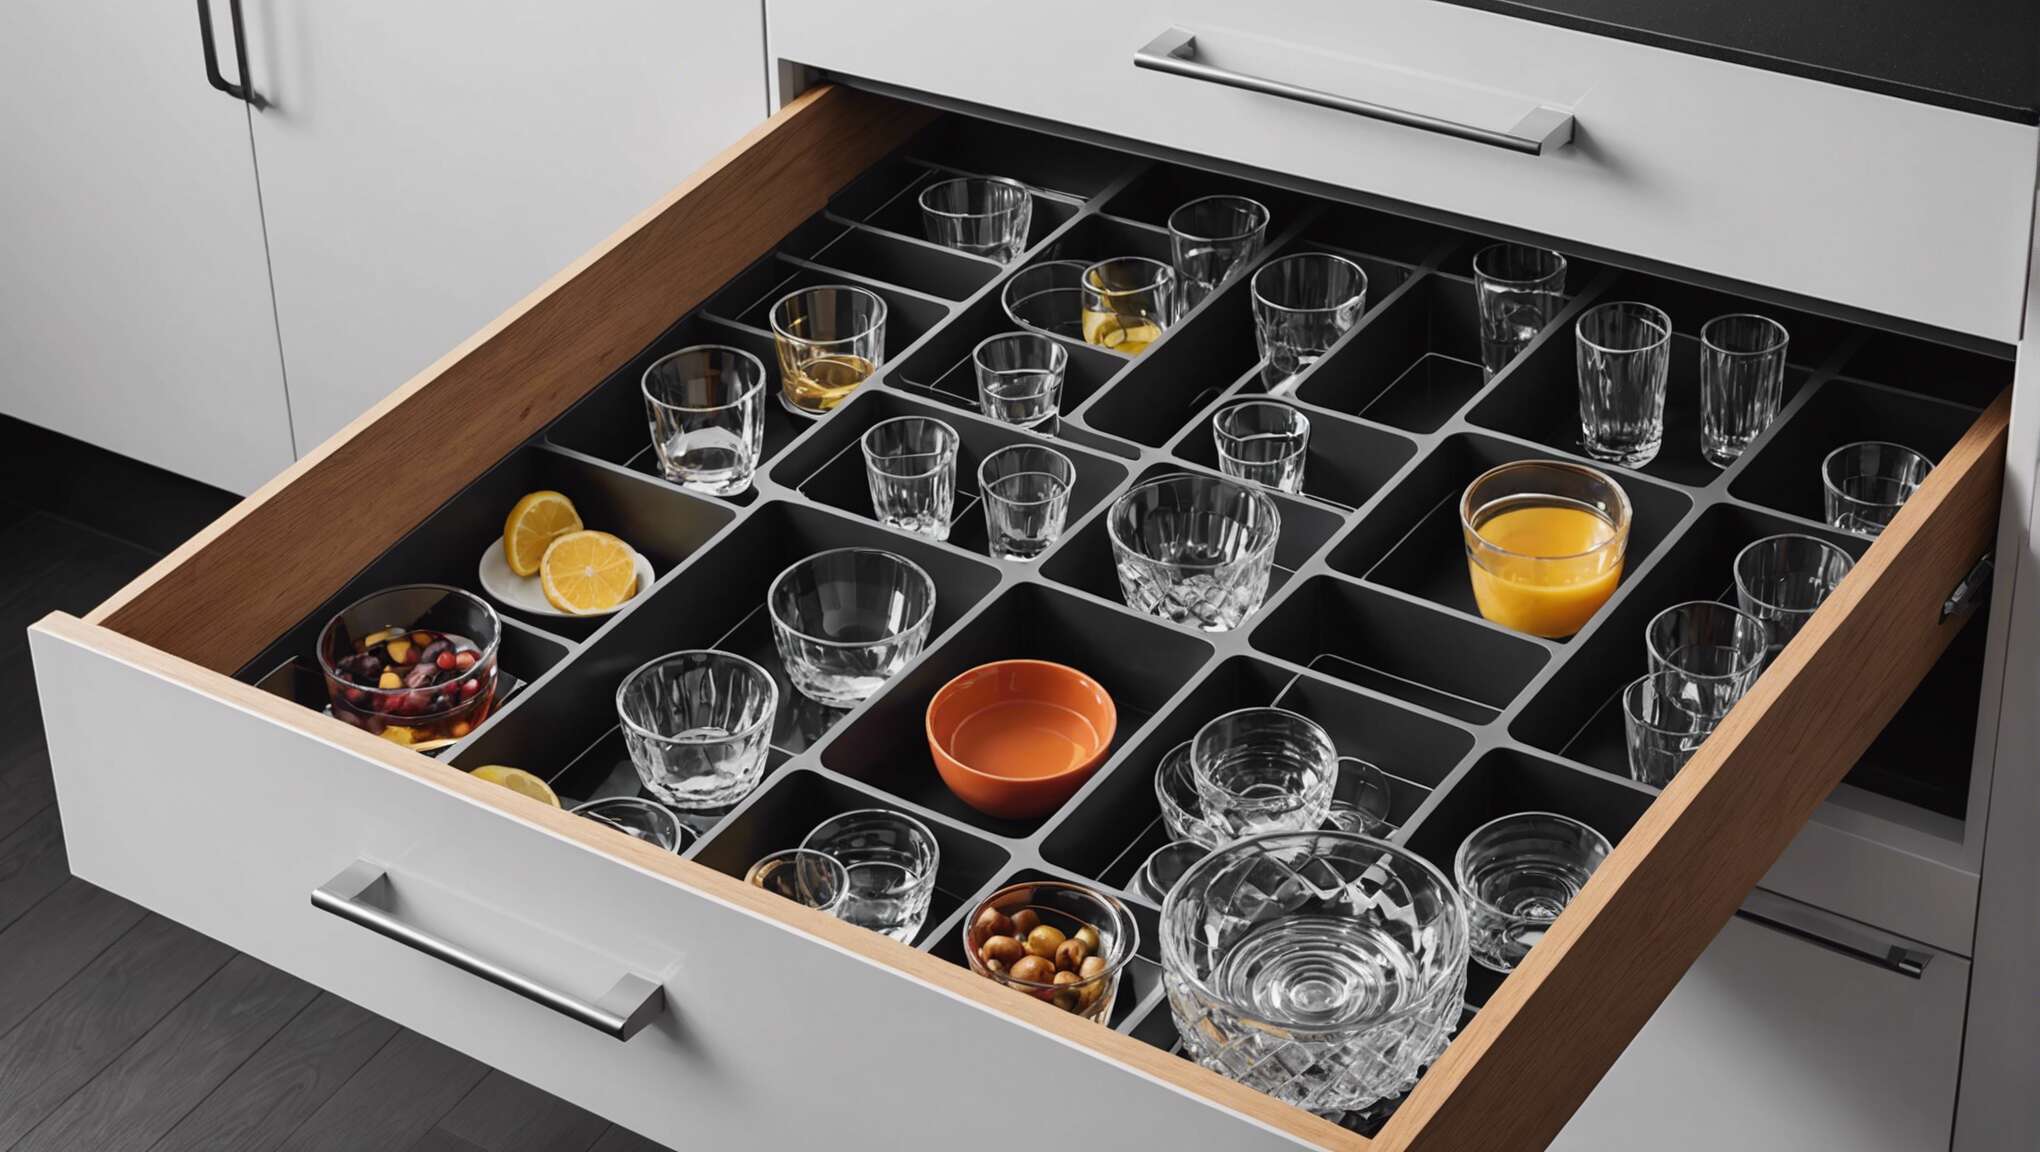 Rangement intelligent : pourquoi adopter le tiroir à verres ?